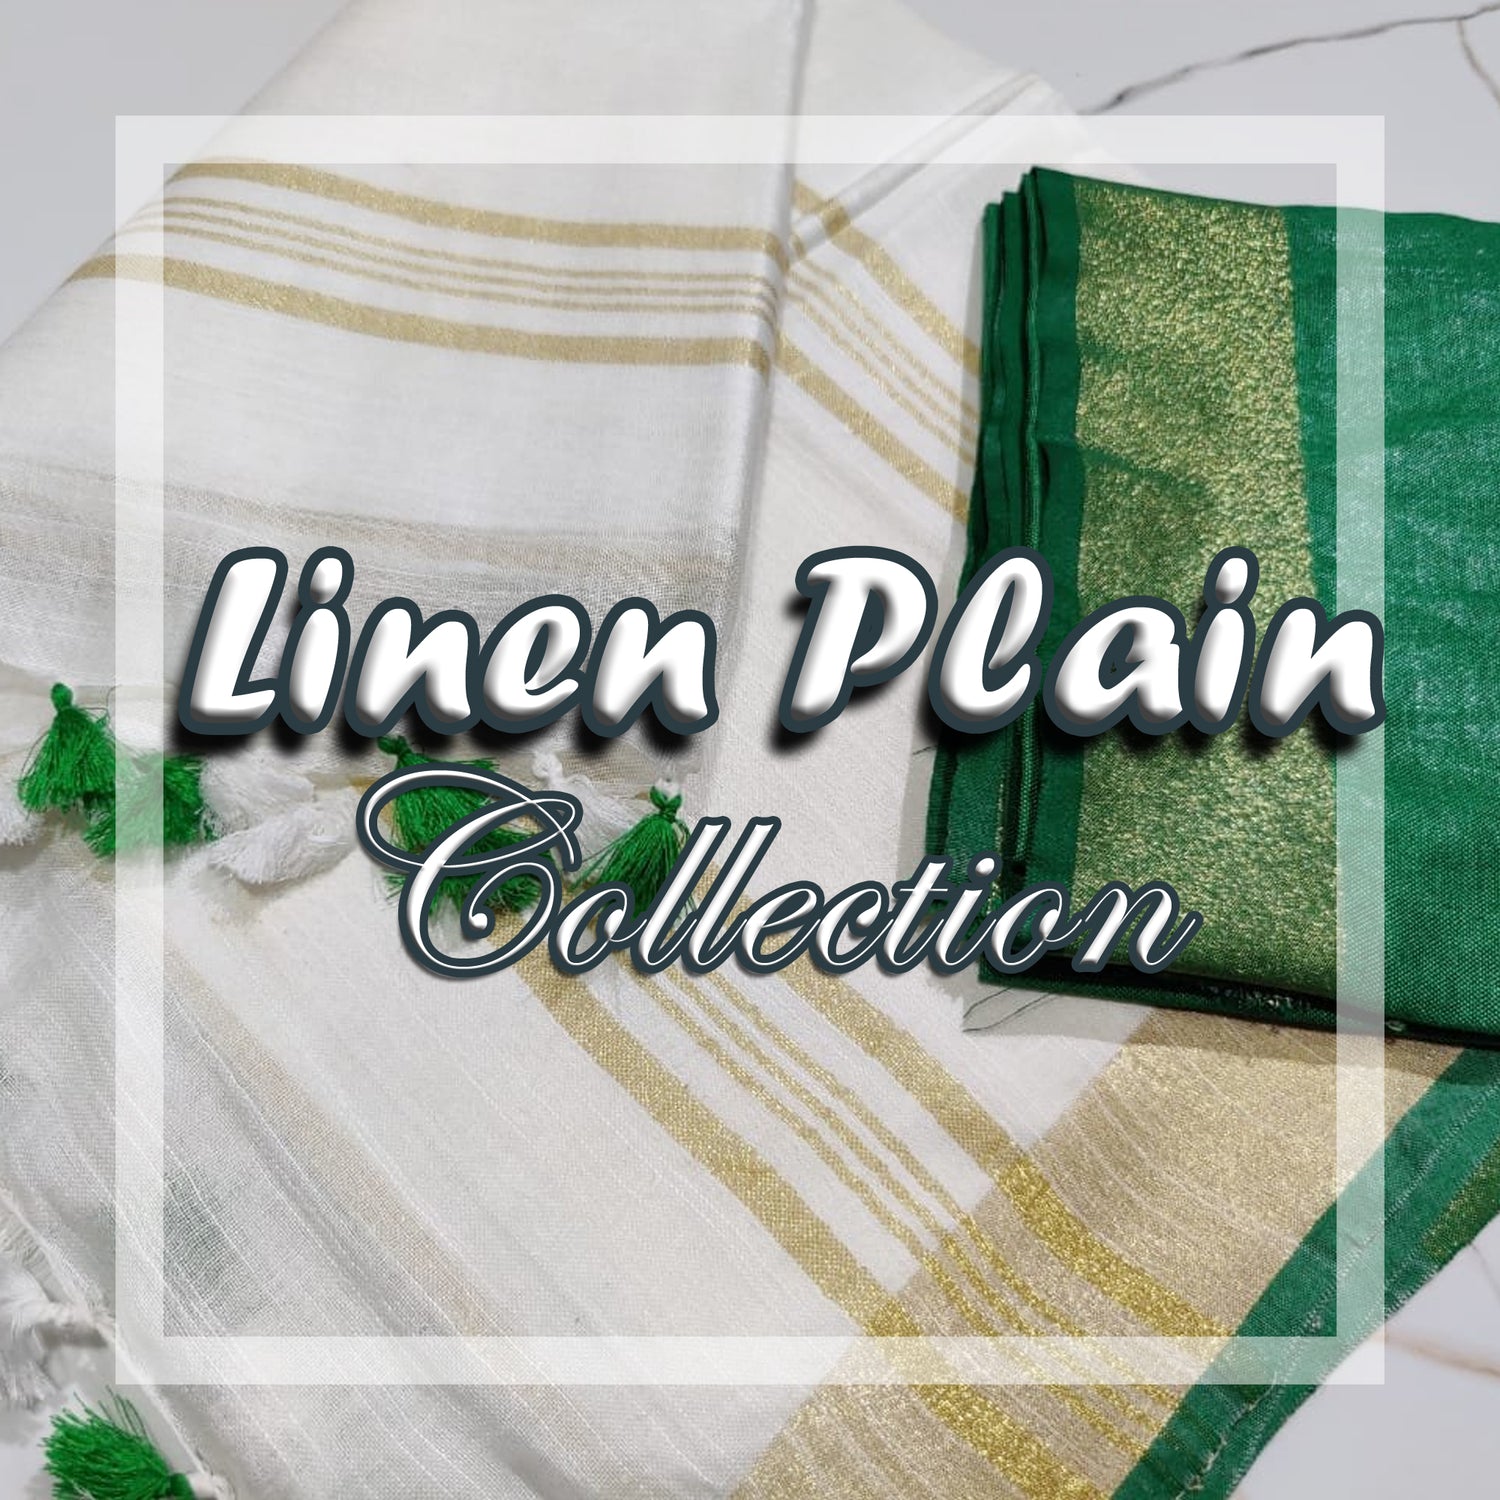 Linen Plain Cotton